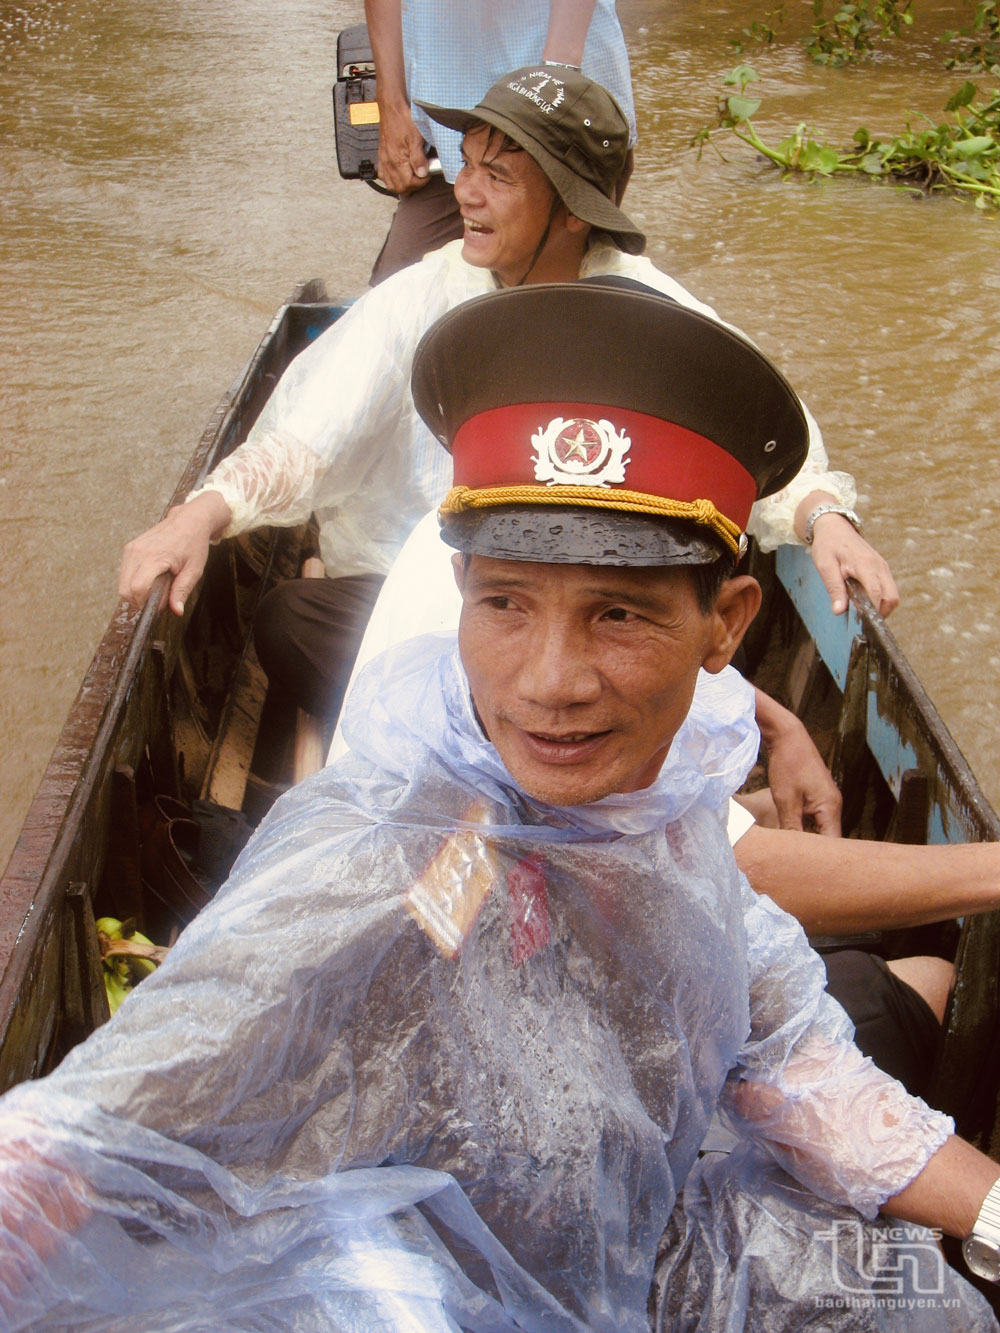 Đại tá Đỗ Hà Thái cùng Đoàn làm phim Hành trình theo Nhật ký Vũ Xuân năm 2006.